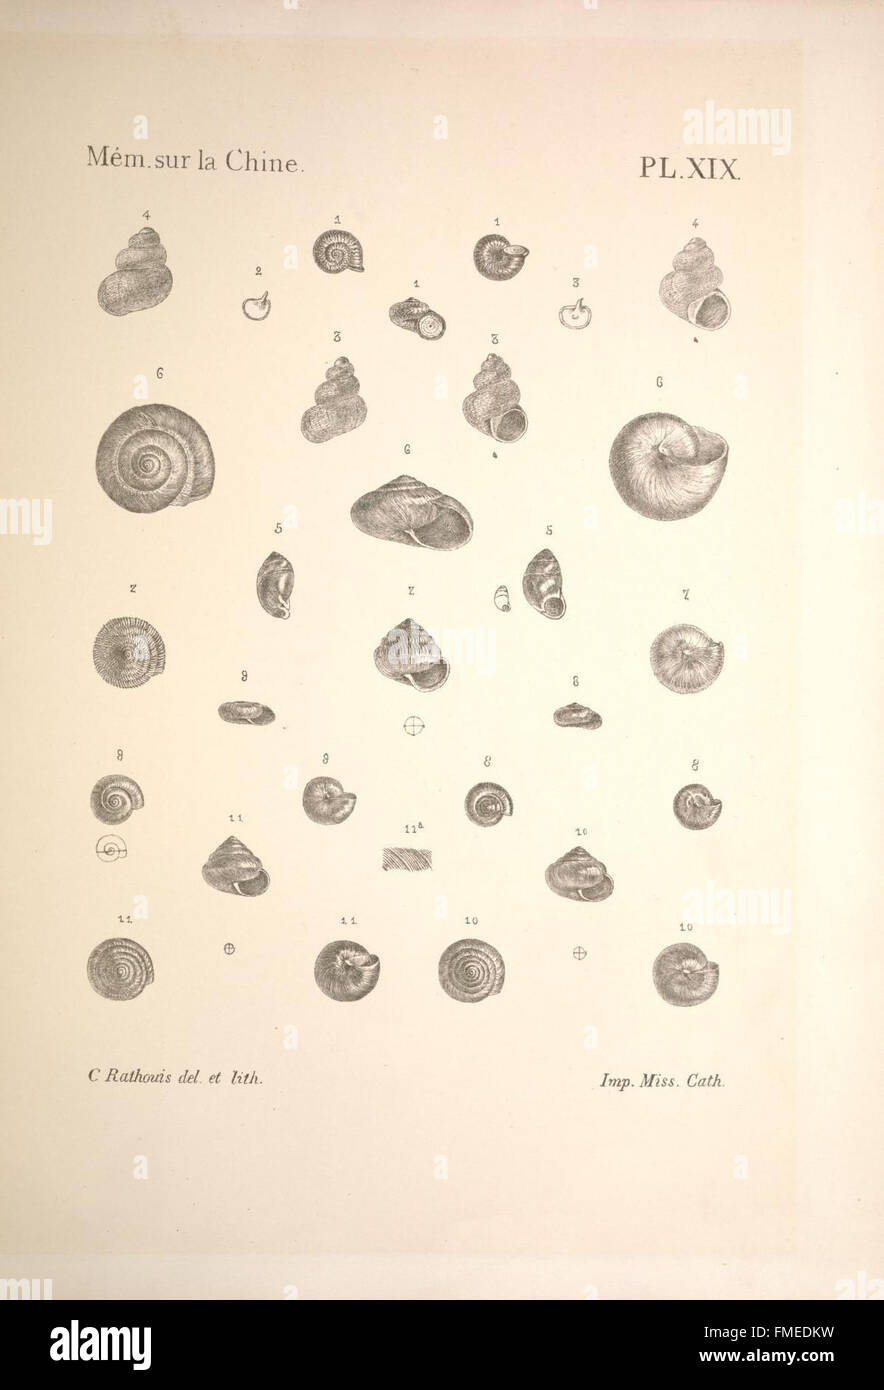 Notes sur les mollusques terrestres de la VallC3A9e du Fleuve Bleu (PL. XIX) Stock Photo